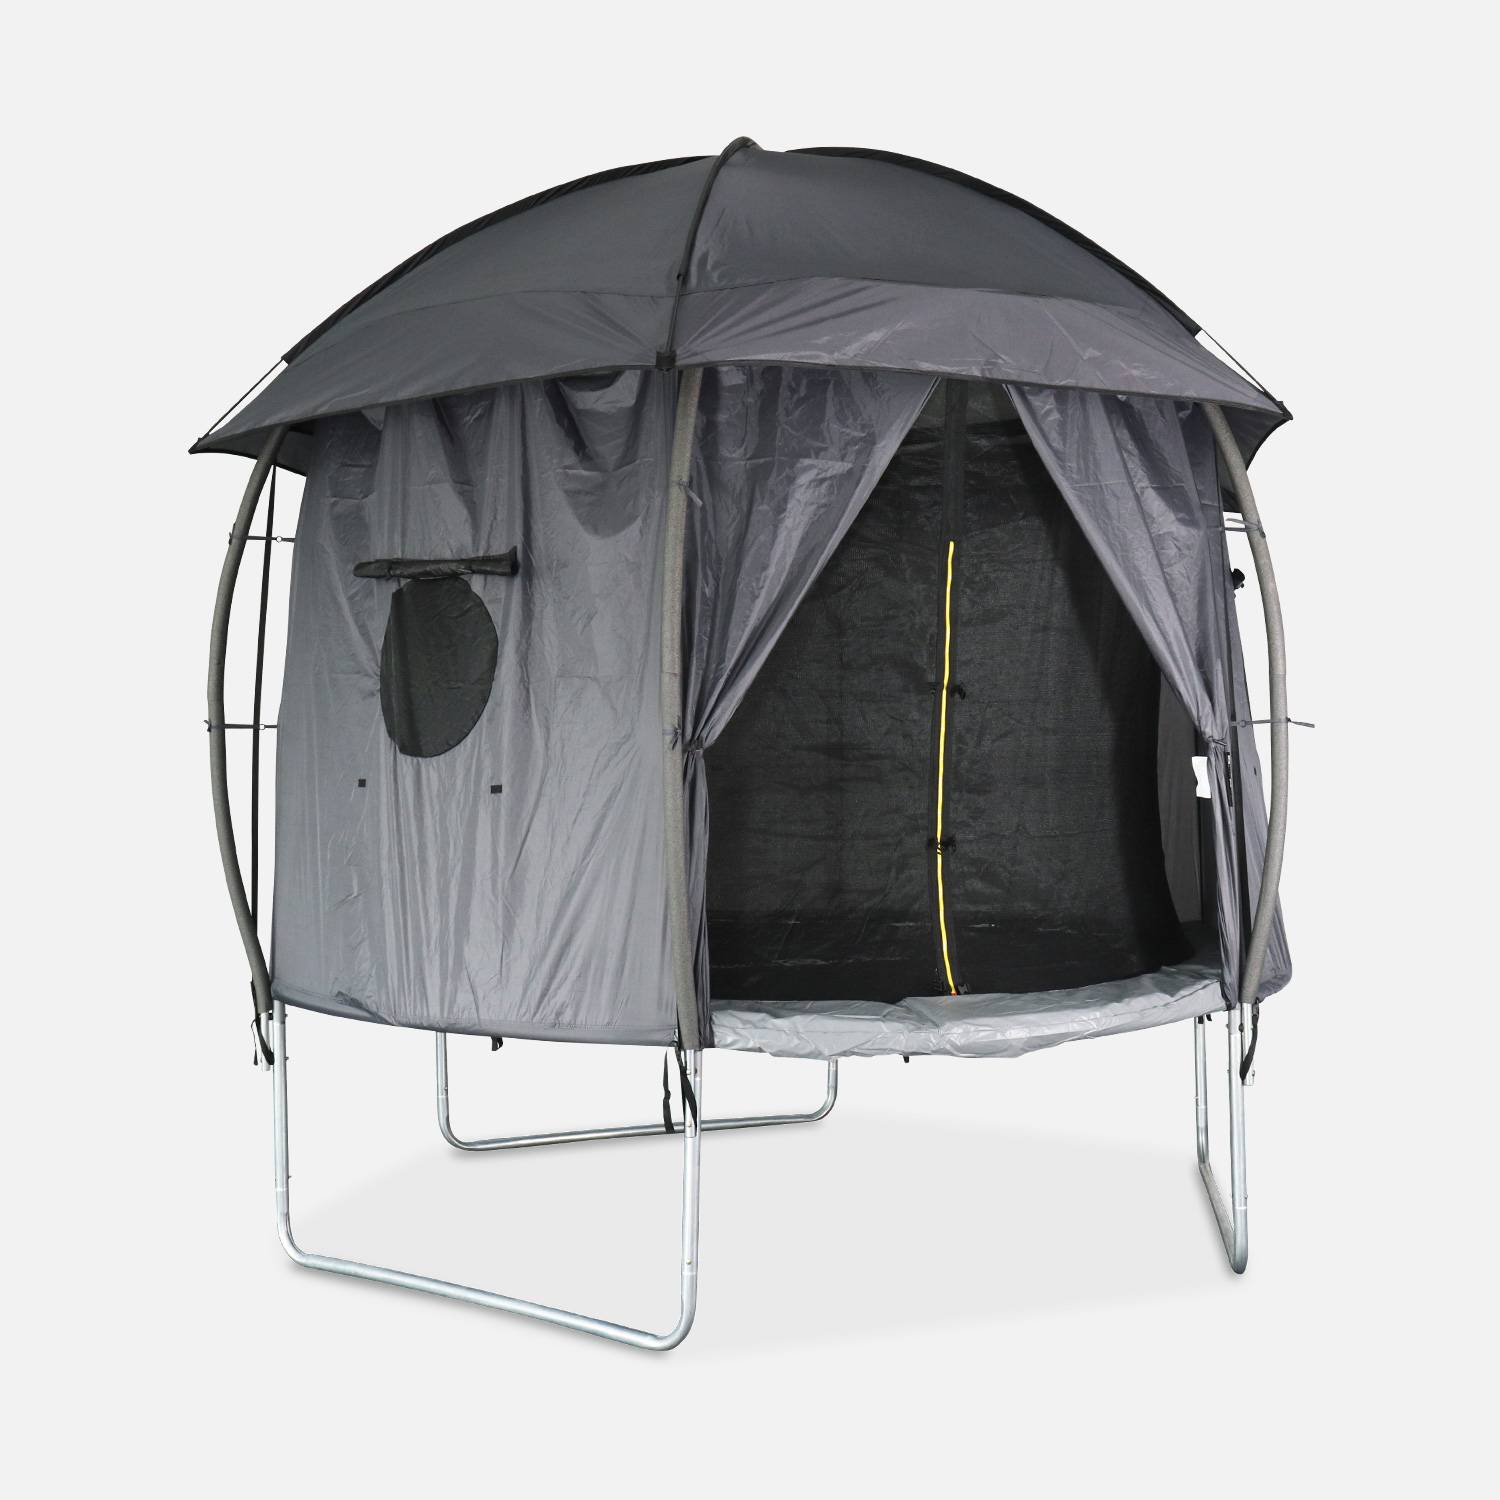 Tenda para trampolim, cabina, poliéster, tratamento UV, 1 porta, 3 janelas e saco de transporte Photo1